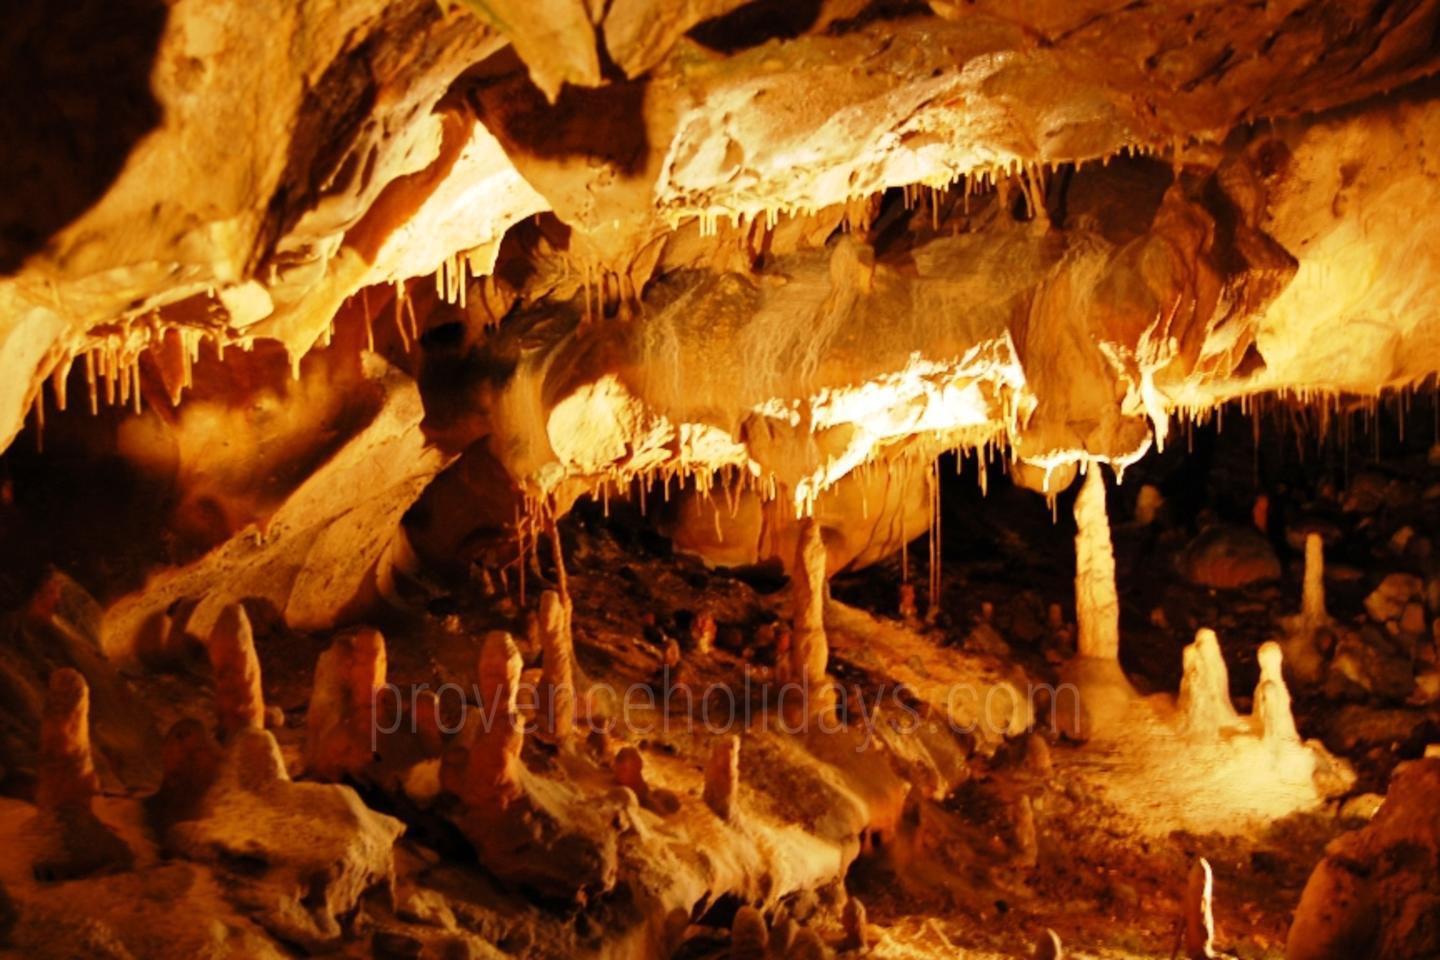 Grotte de Thouzon Grotte de Thouzon - 2141